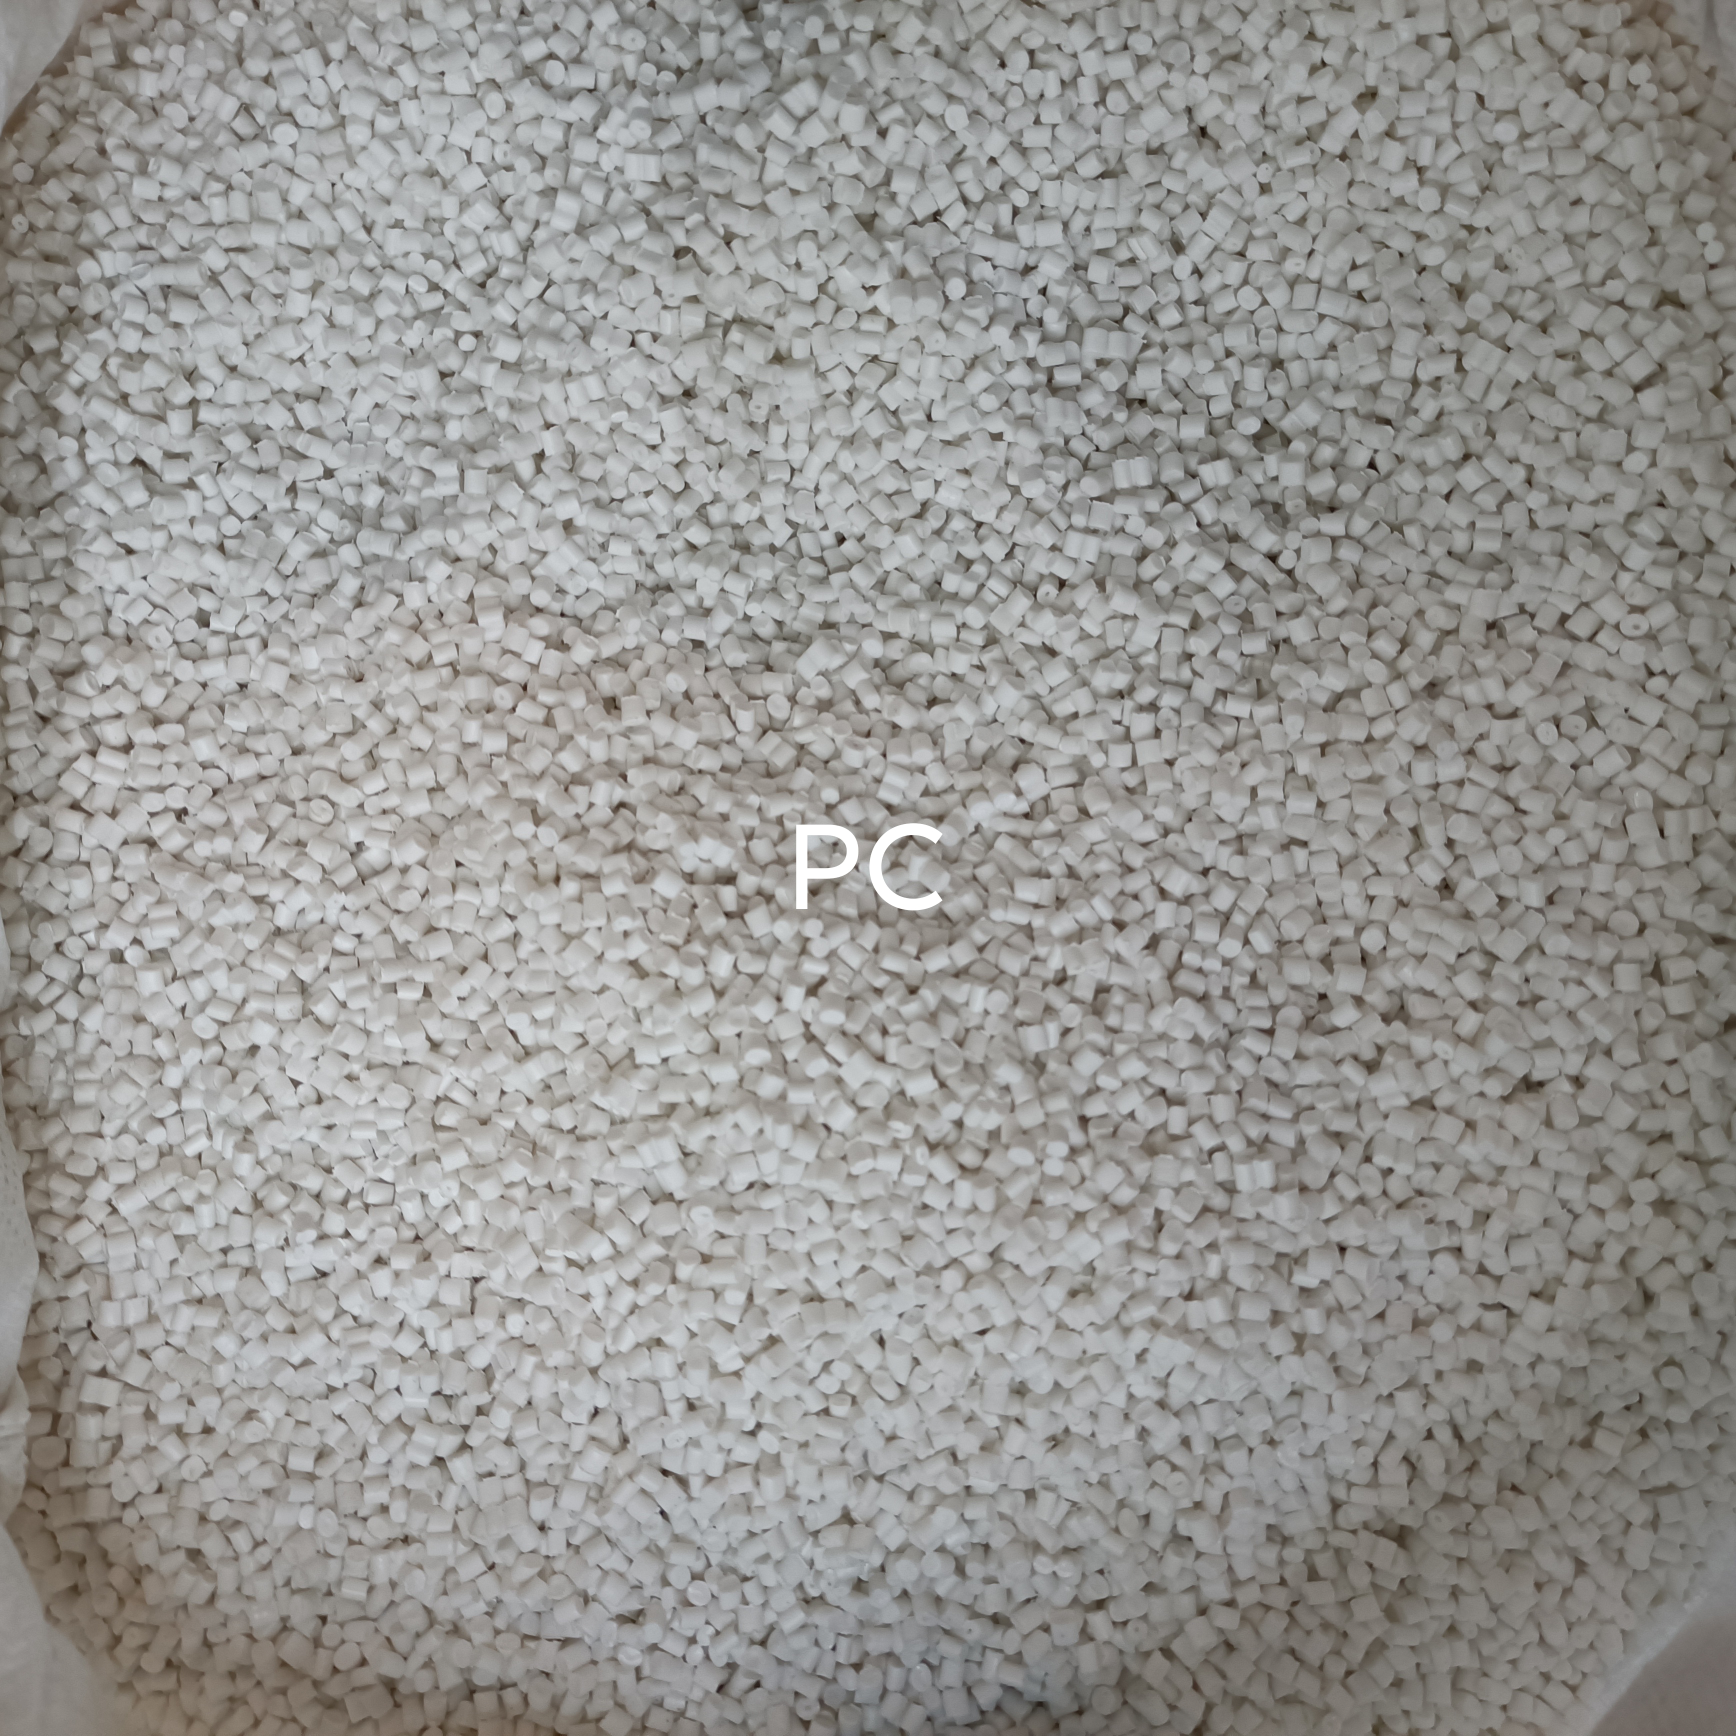 PC白色回料塑料粒子价格面议